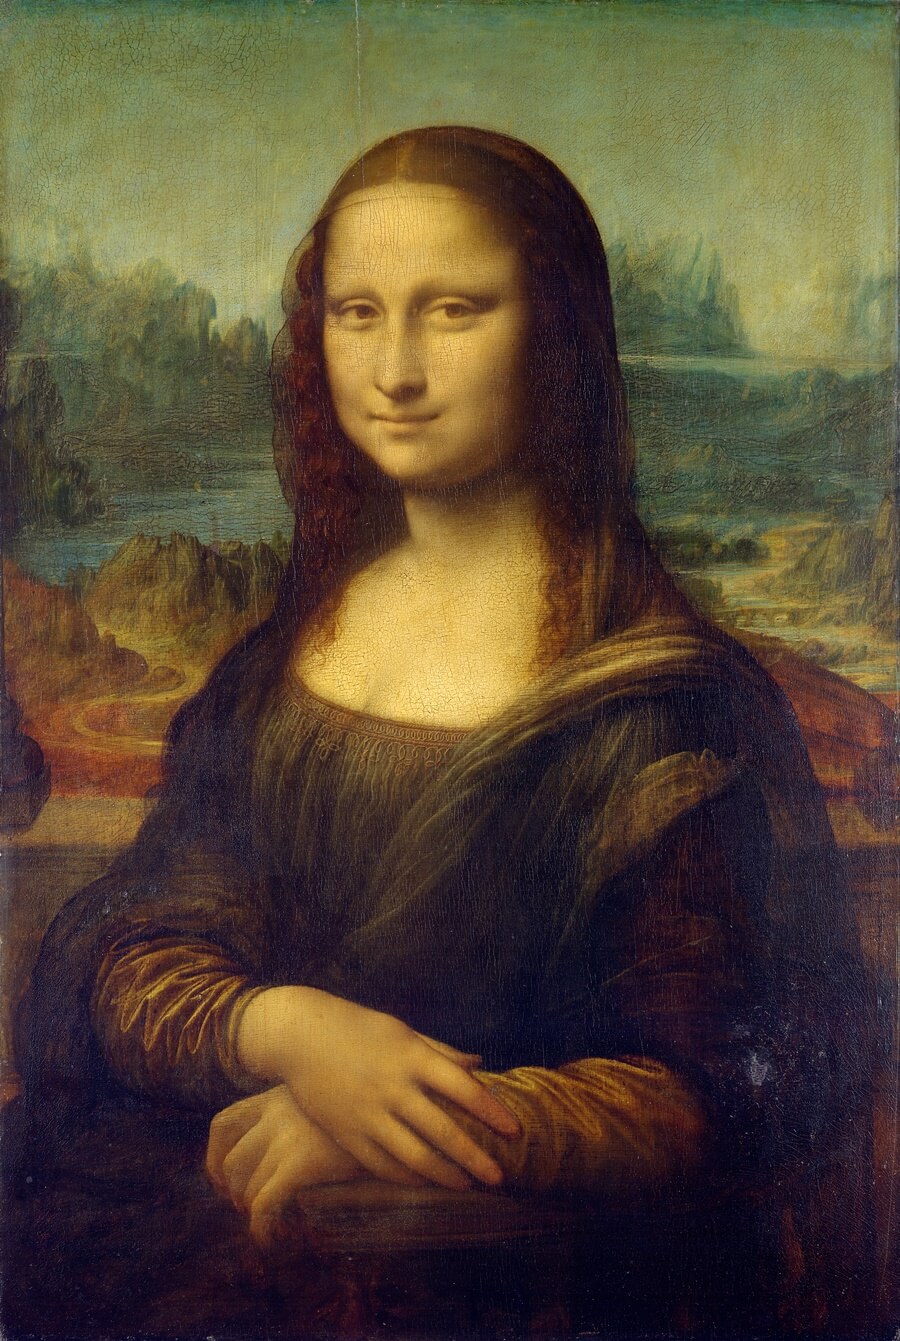 モナリザが世界一有名な絵画である理由 Heritager Com